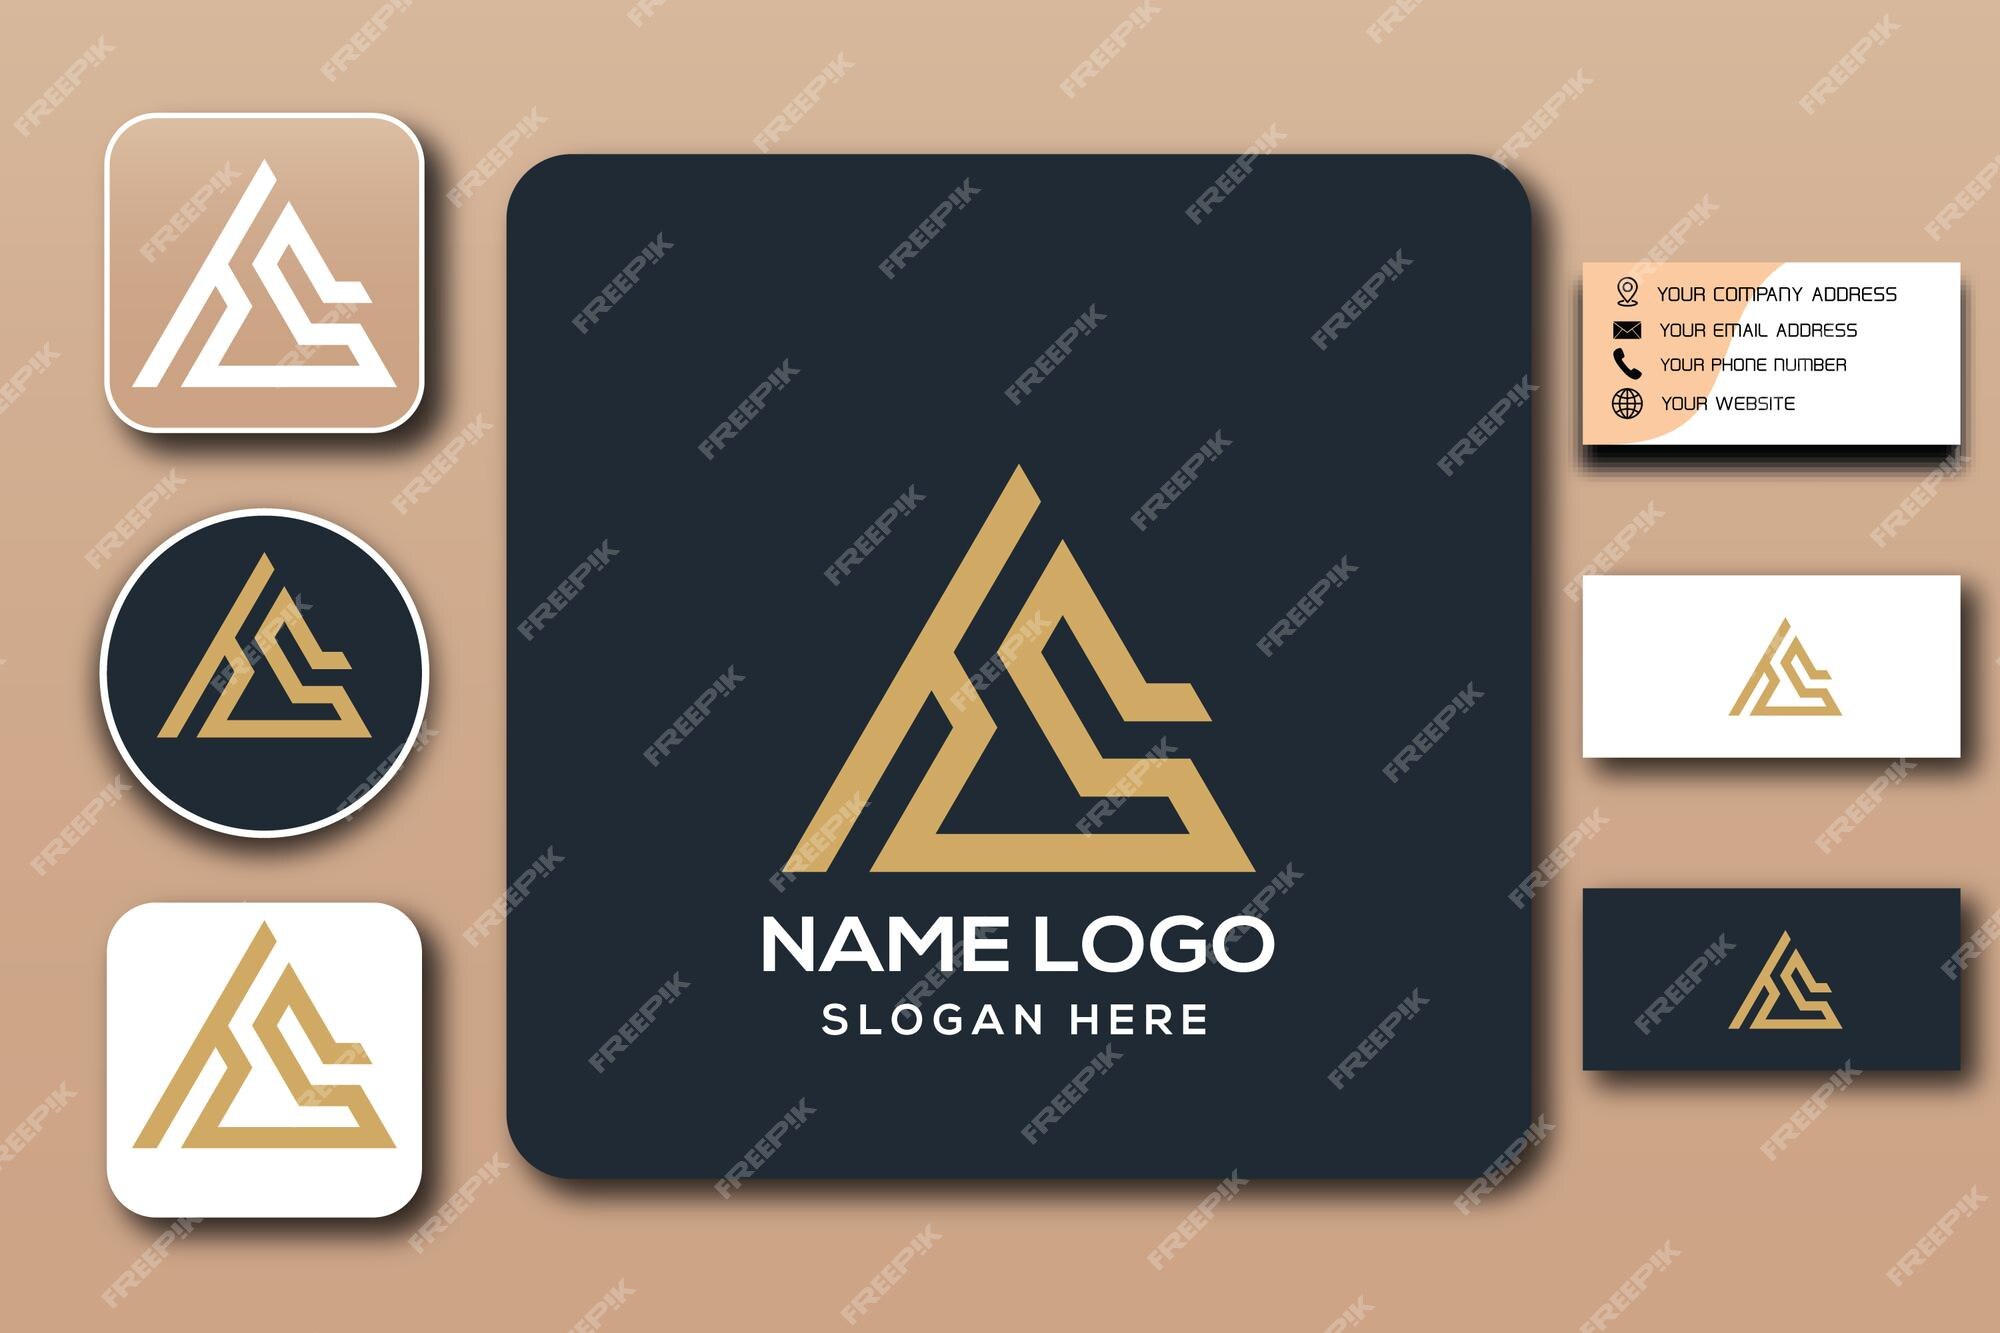 Premium Vector | Hs monogram logo template